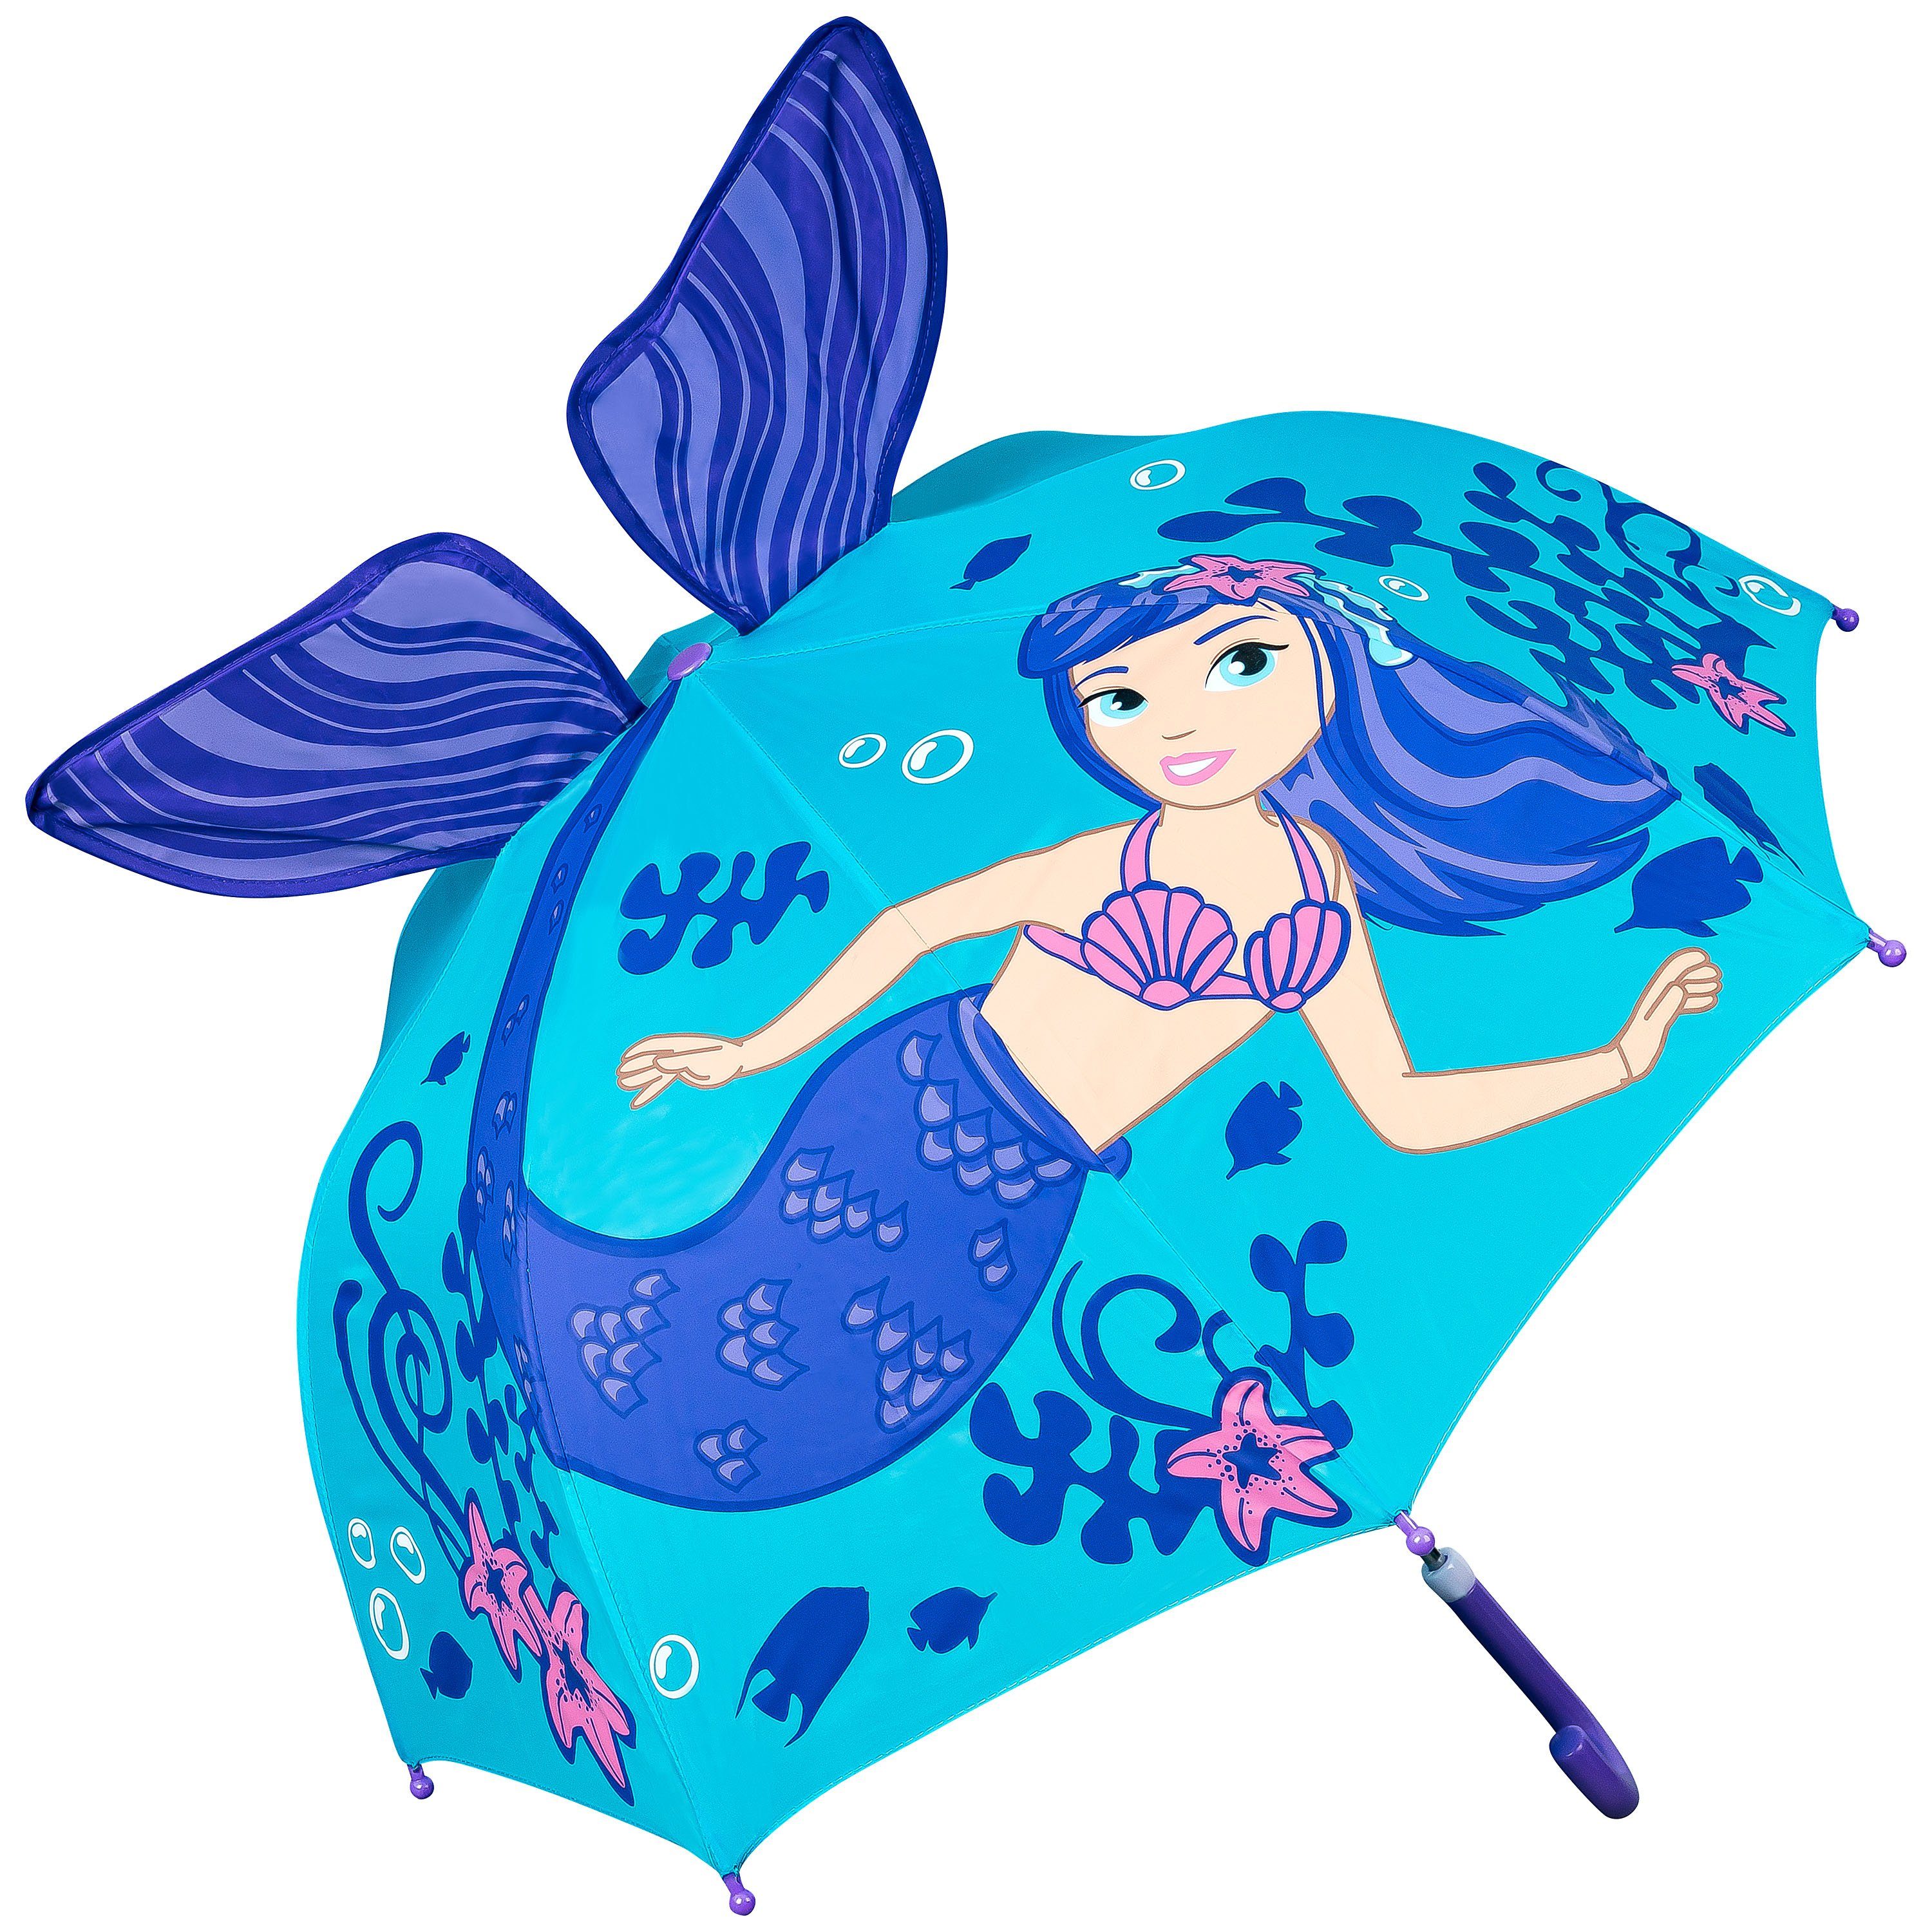 von Lilienfeld Stockregenschirm VON LILIENFELD Regenschirm Kinderschirm Meerjungfrau Nixe Kinderregenschirm Junge Mädchen Kids bis ca. 8 Jahre, 3D